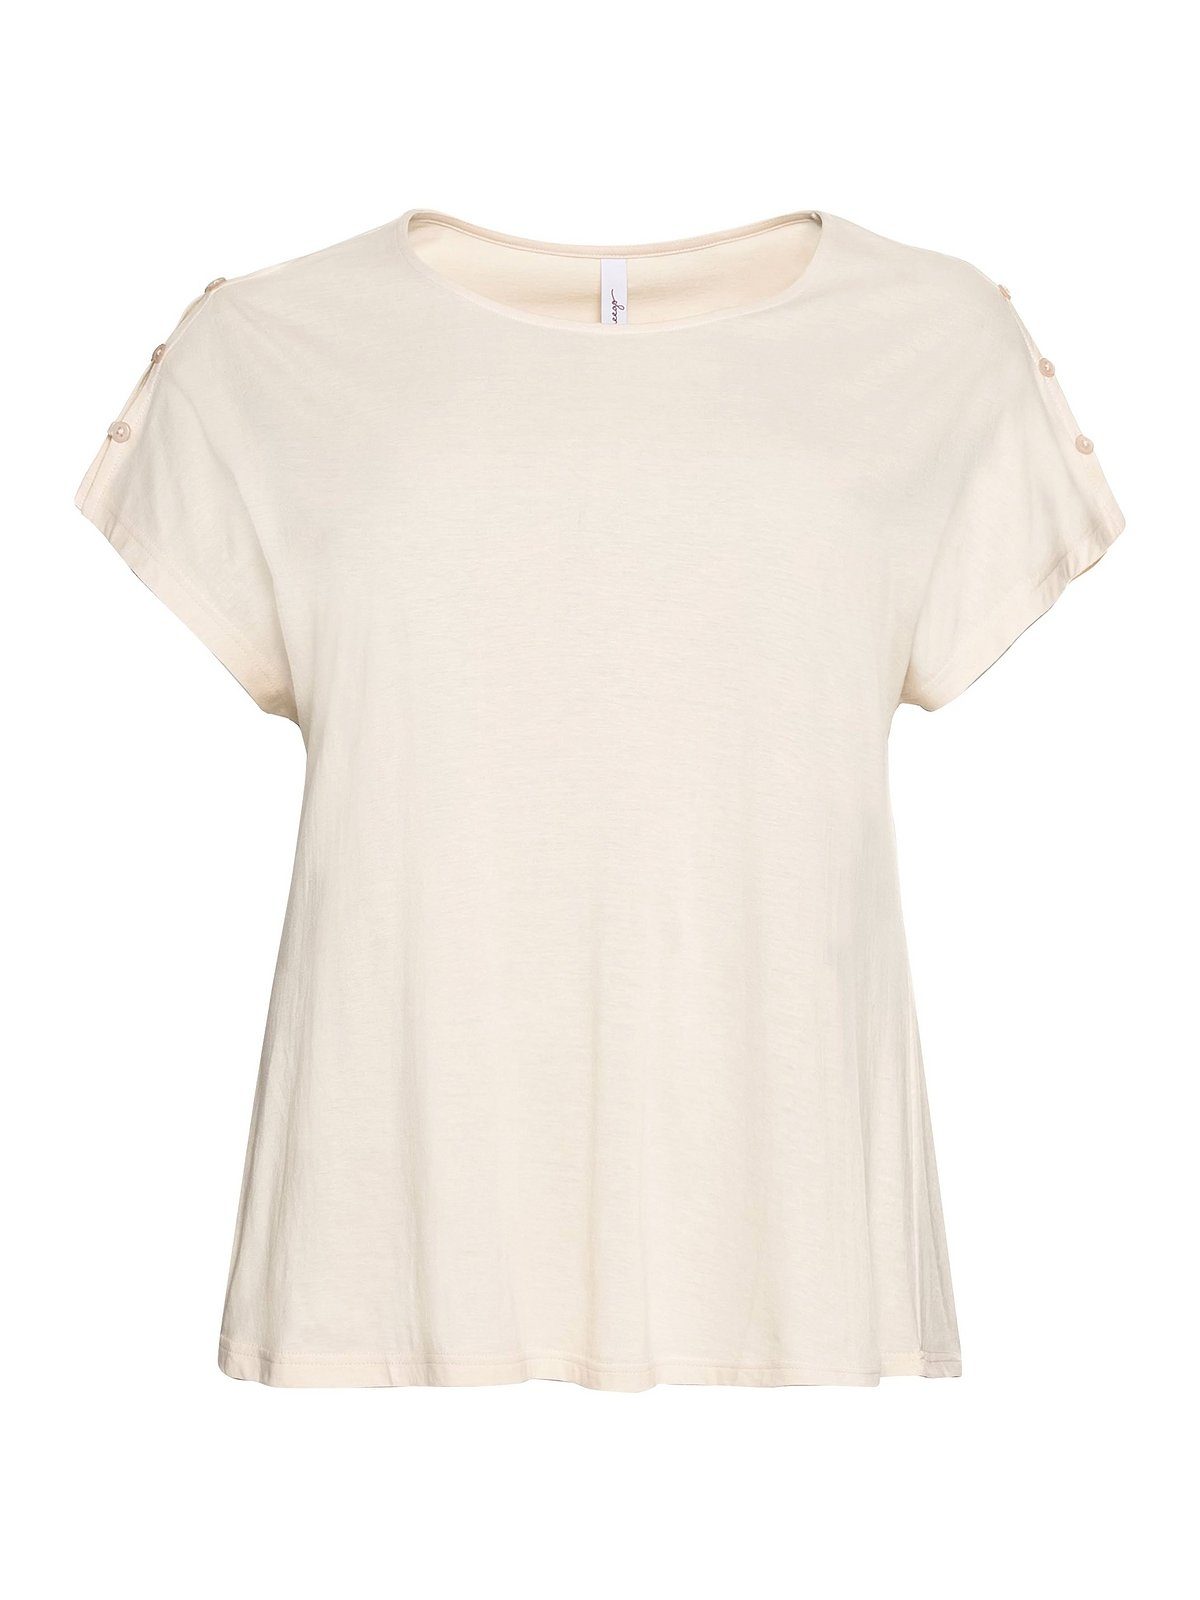 Sheego T-Shirt Große Größen mit in A-Linie natur leichter Schulterpartie, offener